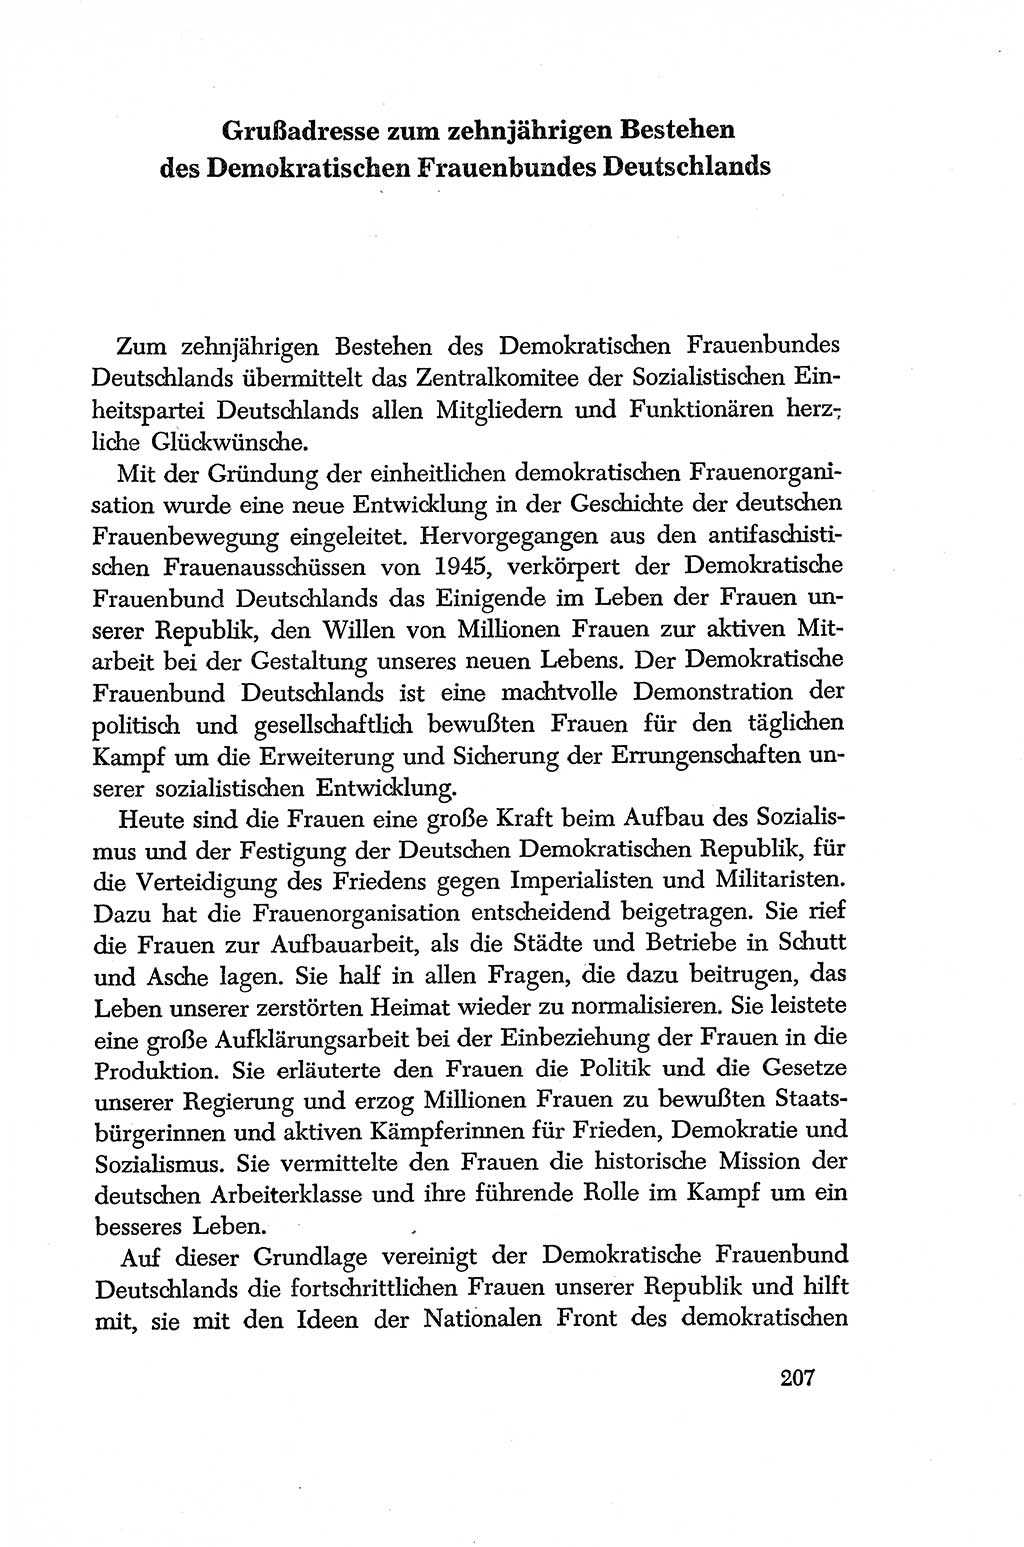 Dokumente der Sozialistischen Einheitspartei Deutschlands (SED) [Deutsche Demokratische Republik (DDR)] 1956-1957, Seite 207 (Dok. SED DDR 1956-1957, S. 207)